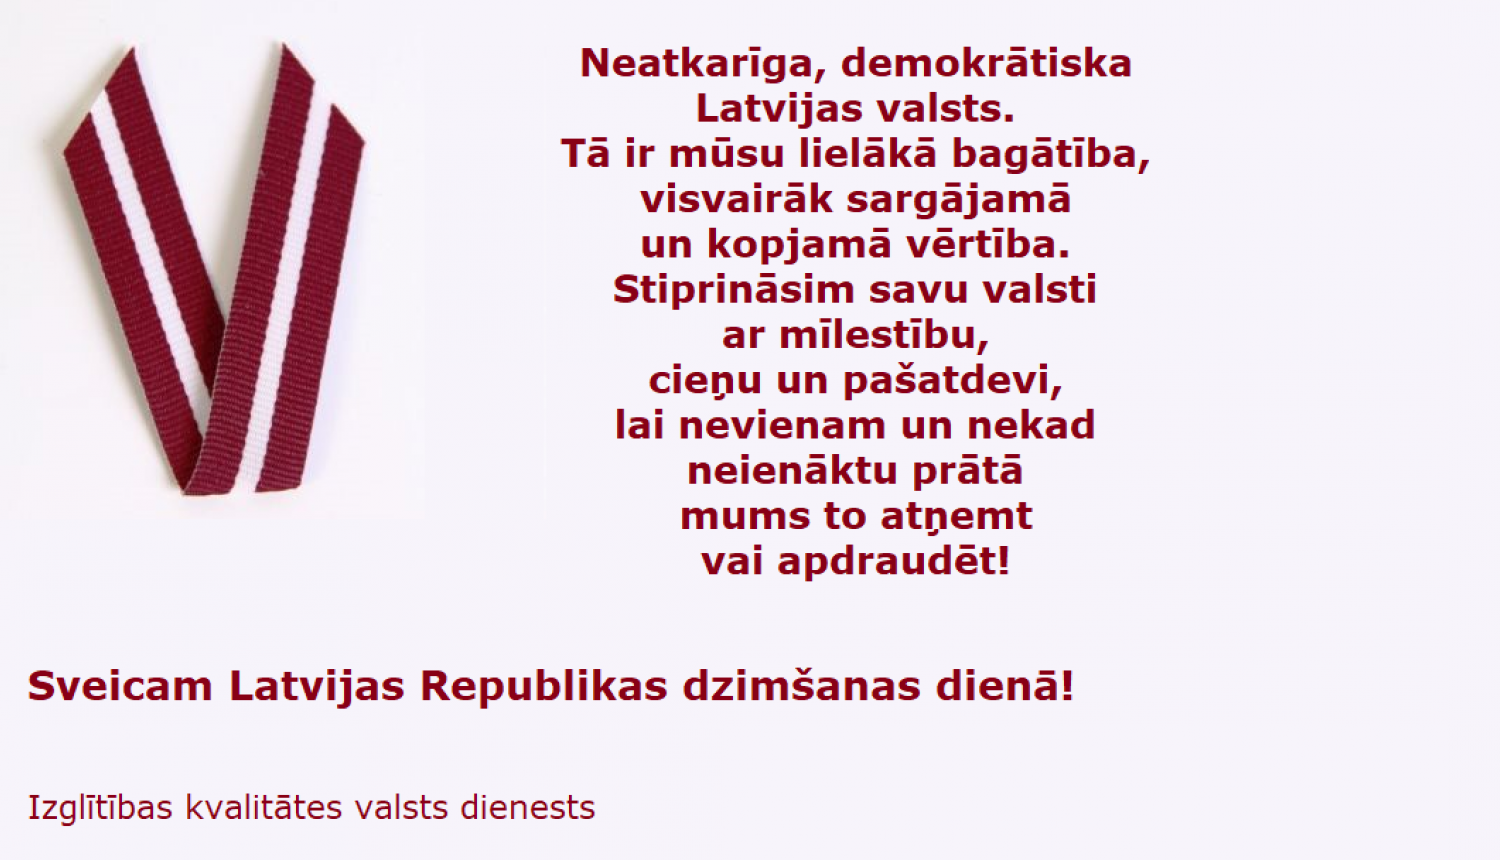 Izglītības kvalitātes valsts dienests sveic Latvijas valsts dzimšanas dienā!